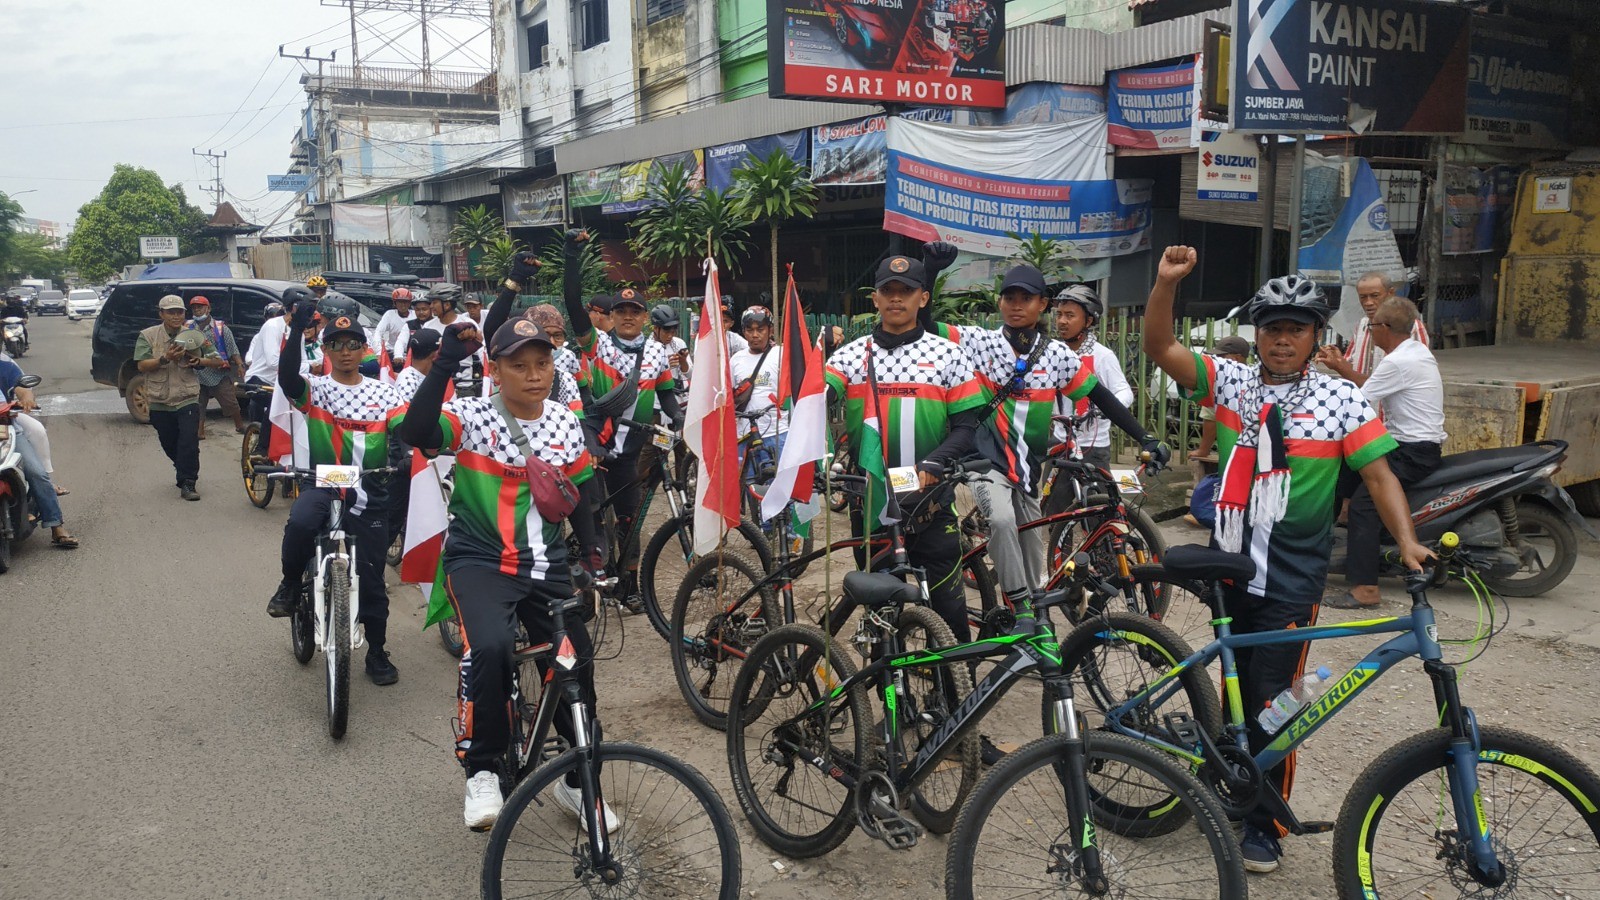 فعاليات كثيرة للتضامن مع أهل فلسطين في اندونيسيا  876.jpg